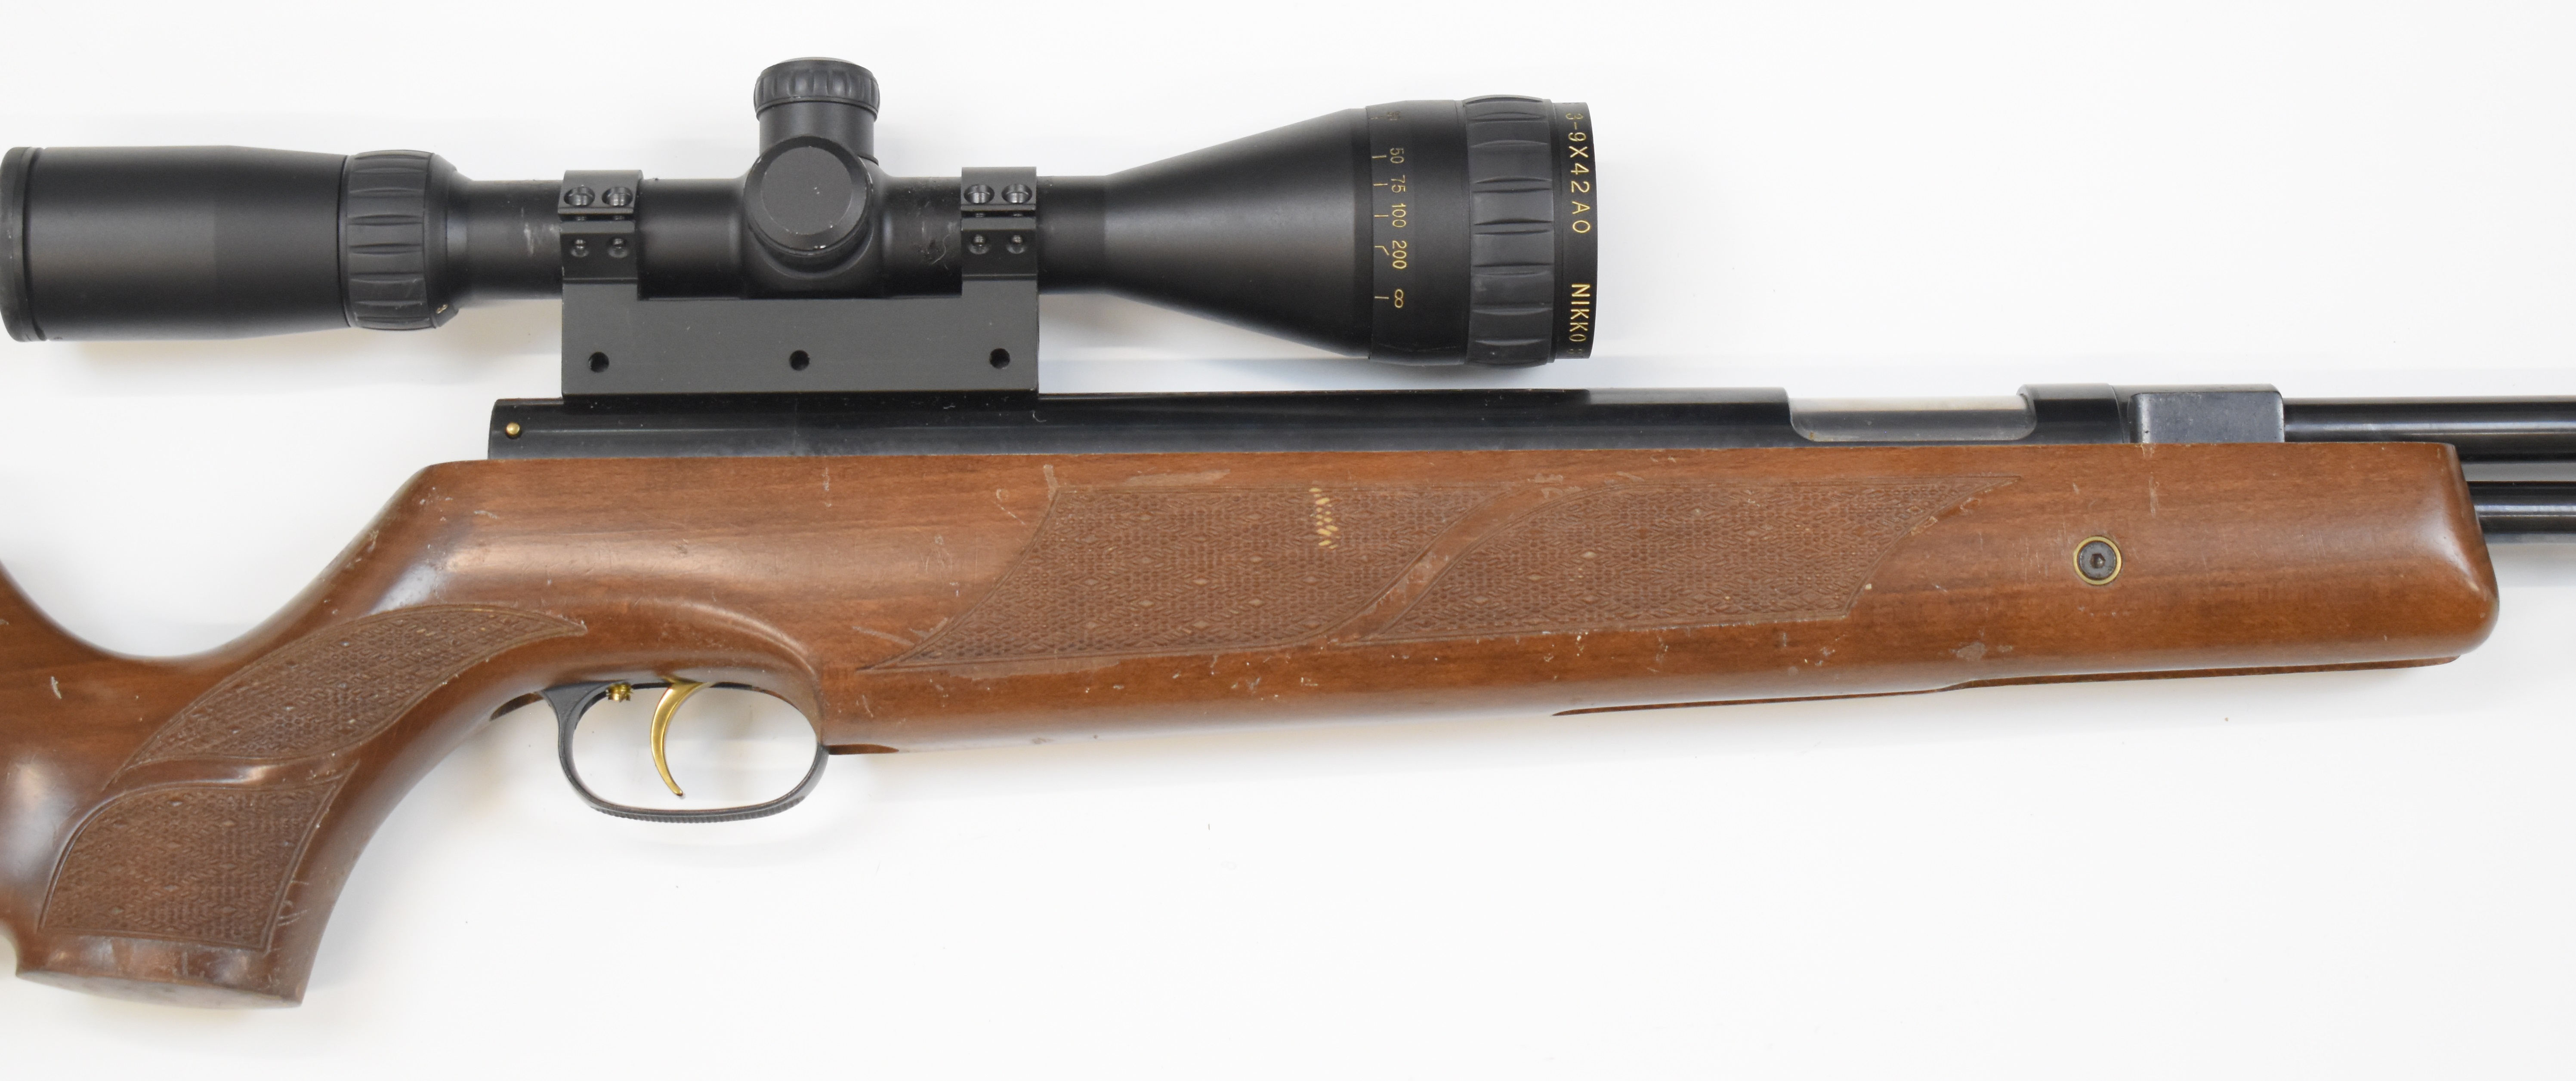 Weihrauch HW97K .177 underlever air rifle with chequered semi-pistol grip, raised cheek piece, sling - Image 4 of 10